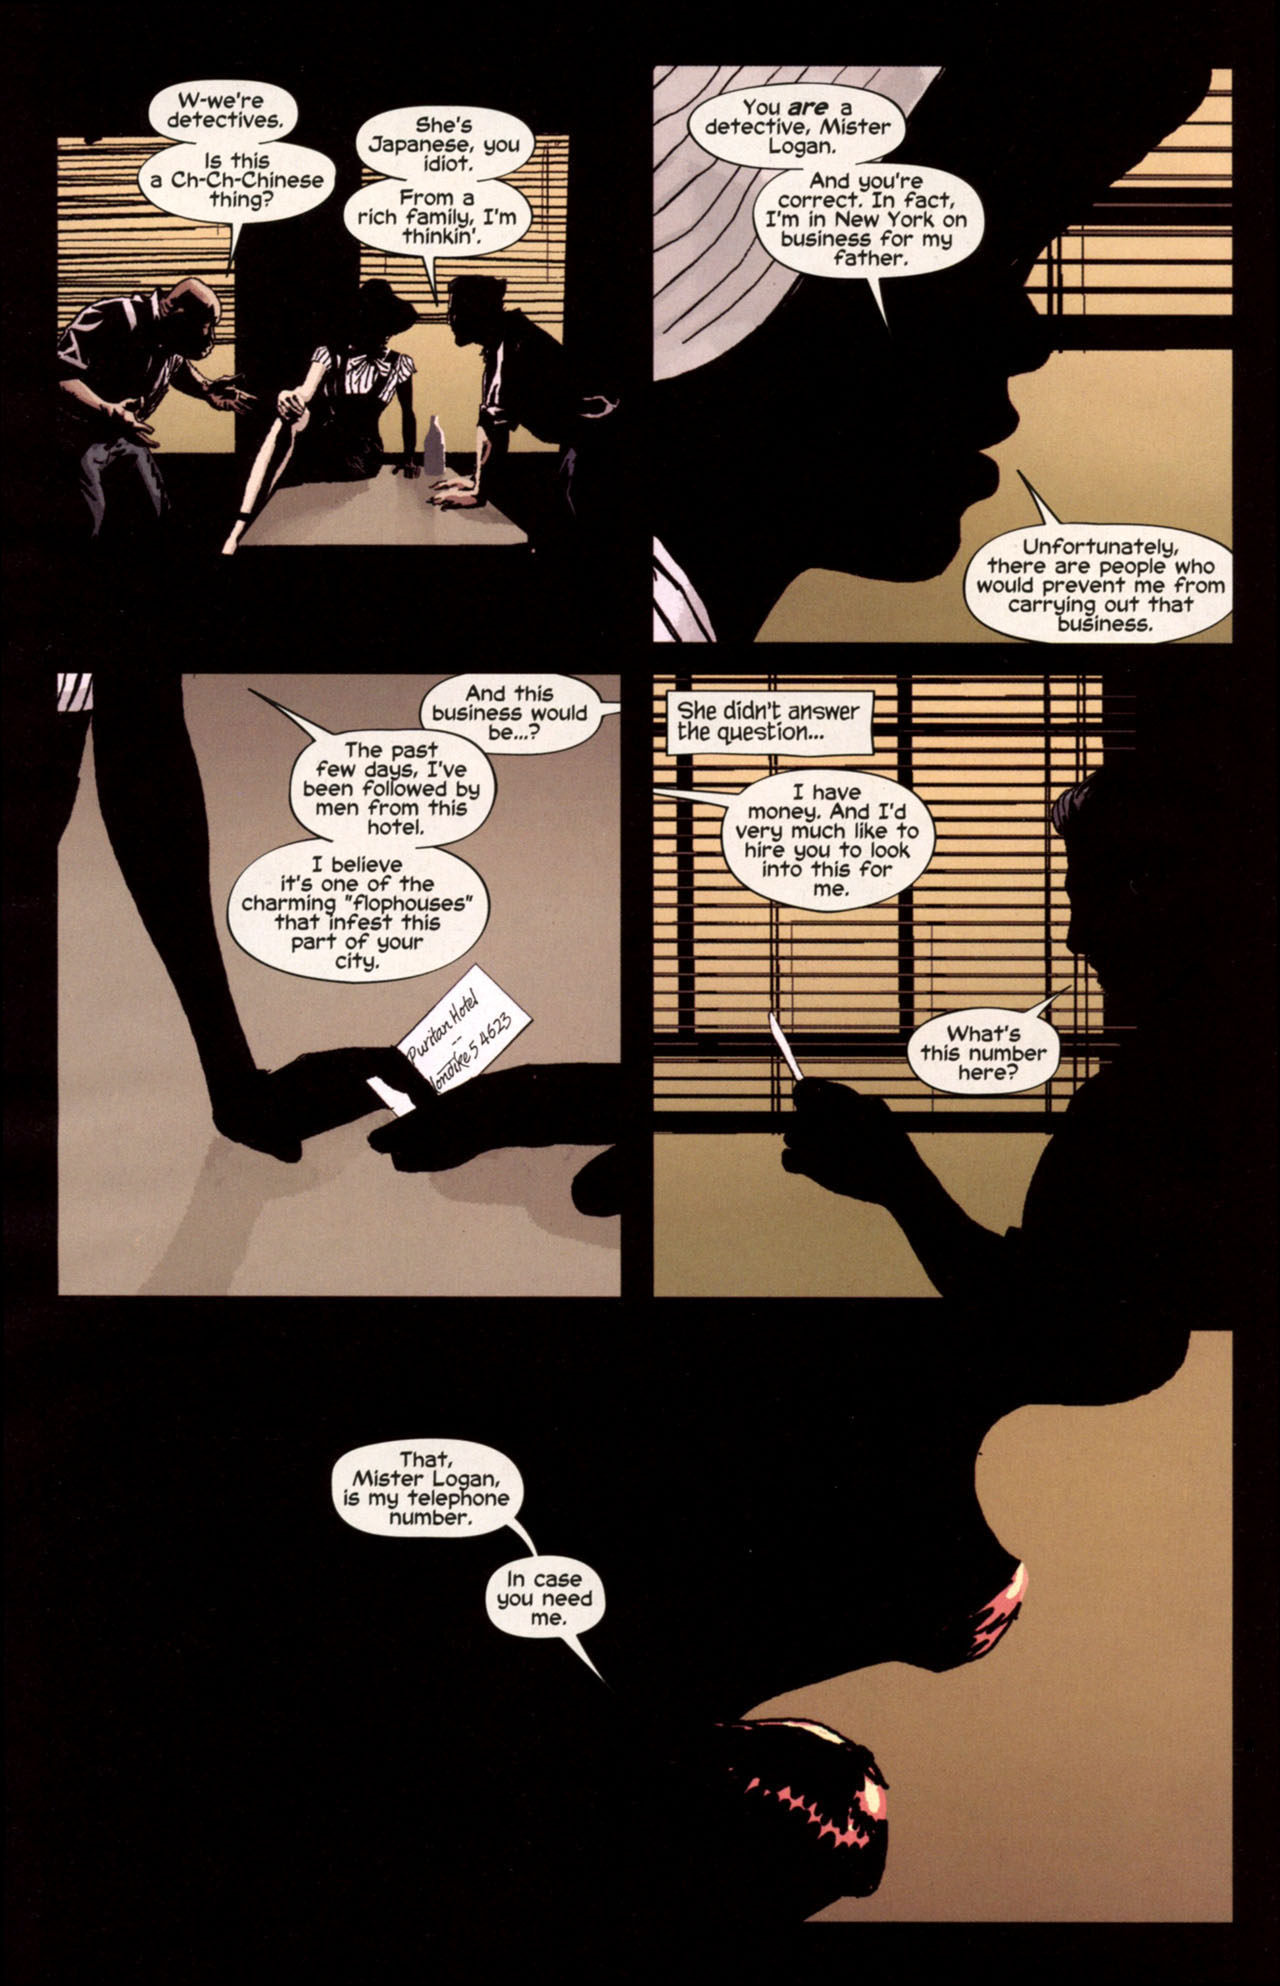 Wolverine Noir #1 (of 4) - Jack Roller